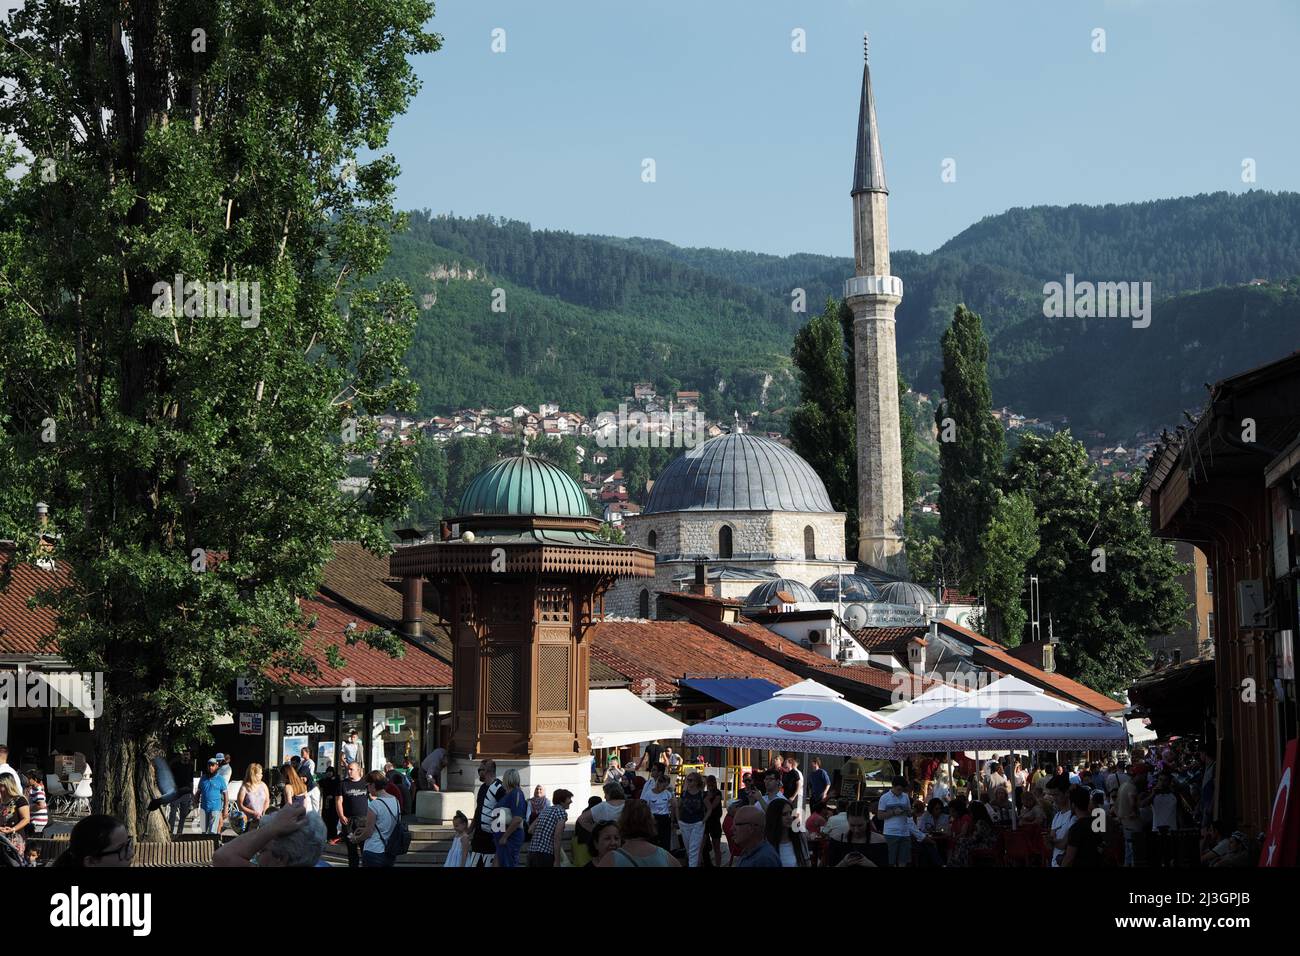 SARAJEVO, BOSNIA AND HERZEGOVINA - JULY 14, 2018: Sebilj wooden fountain in the centre of Bascarsija in Sarajevo, Bosnia And Herzegovina Stock Photo